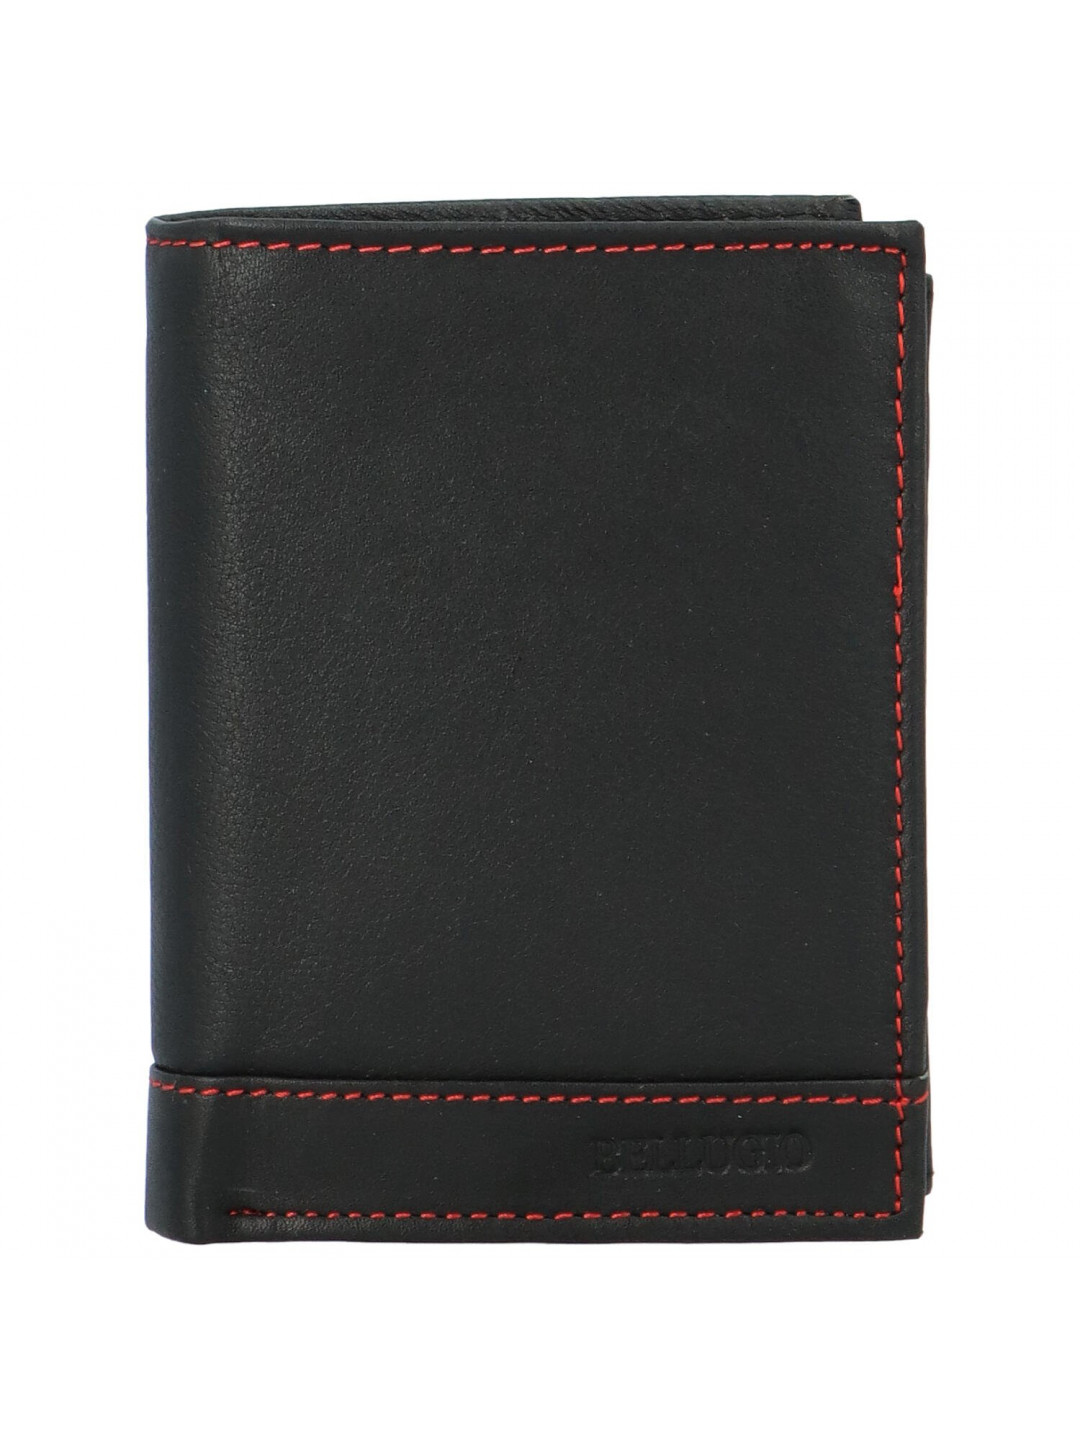 Pánská kožená peněženka černo červená – Bellugio Eddie